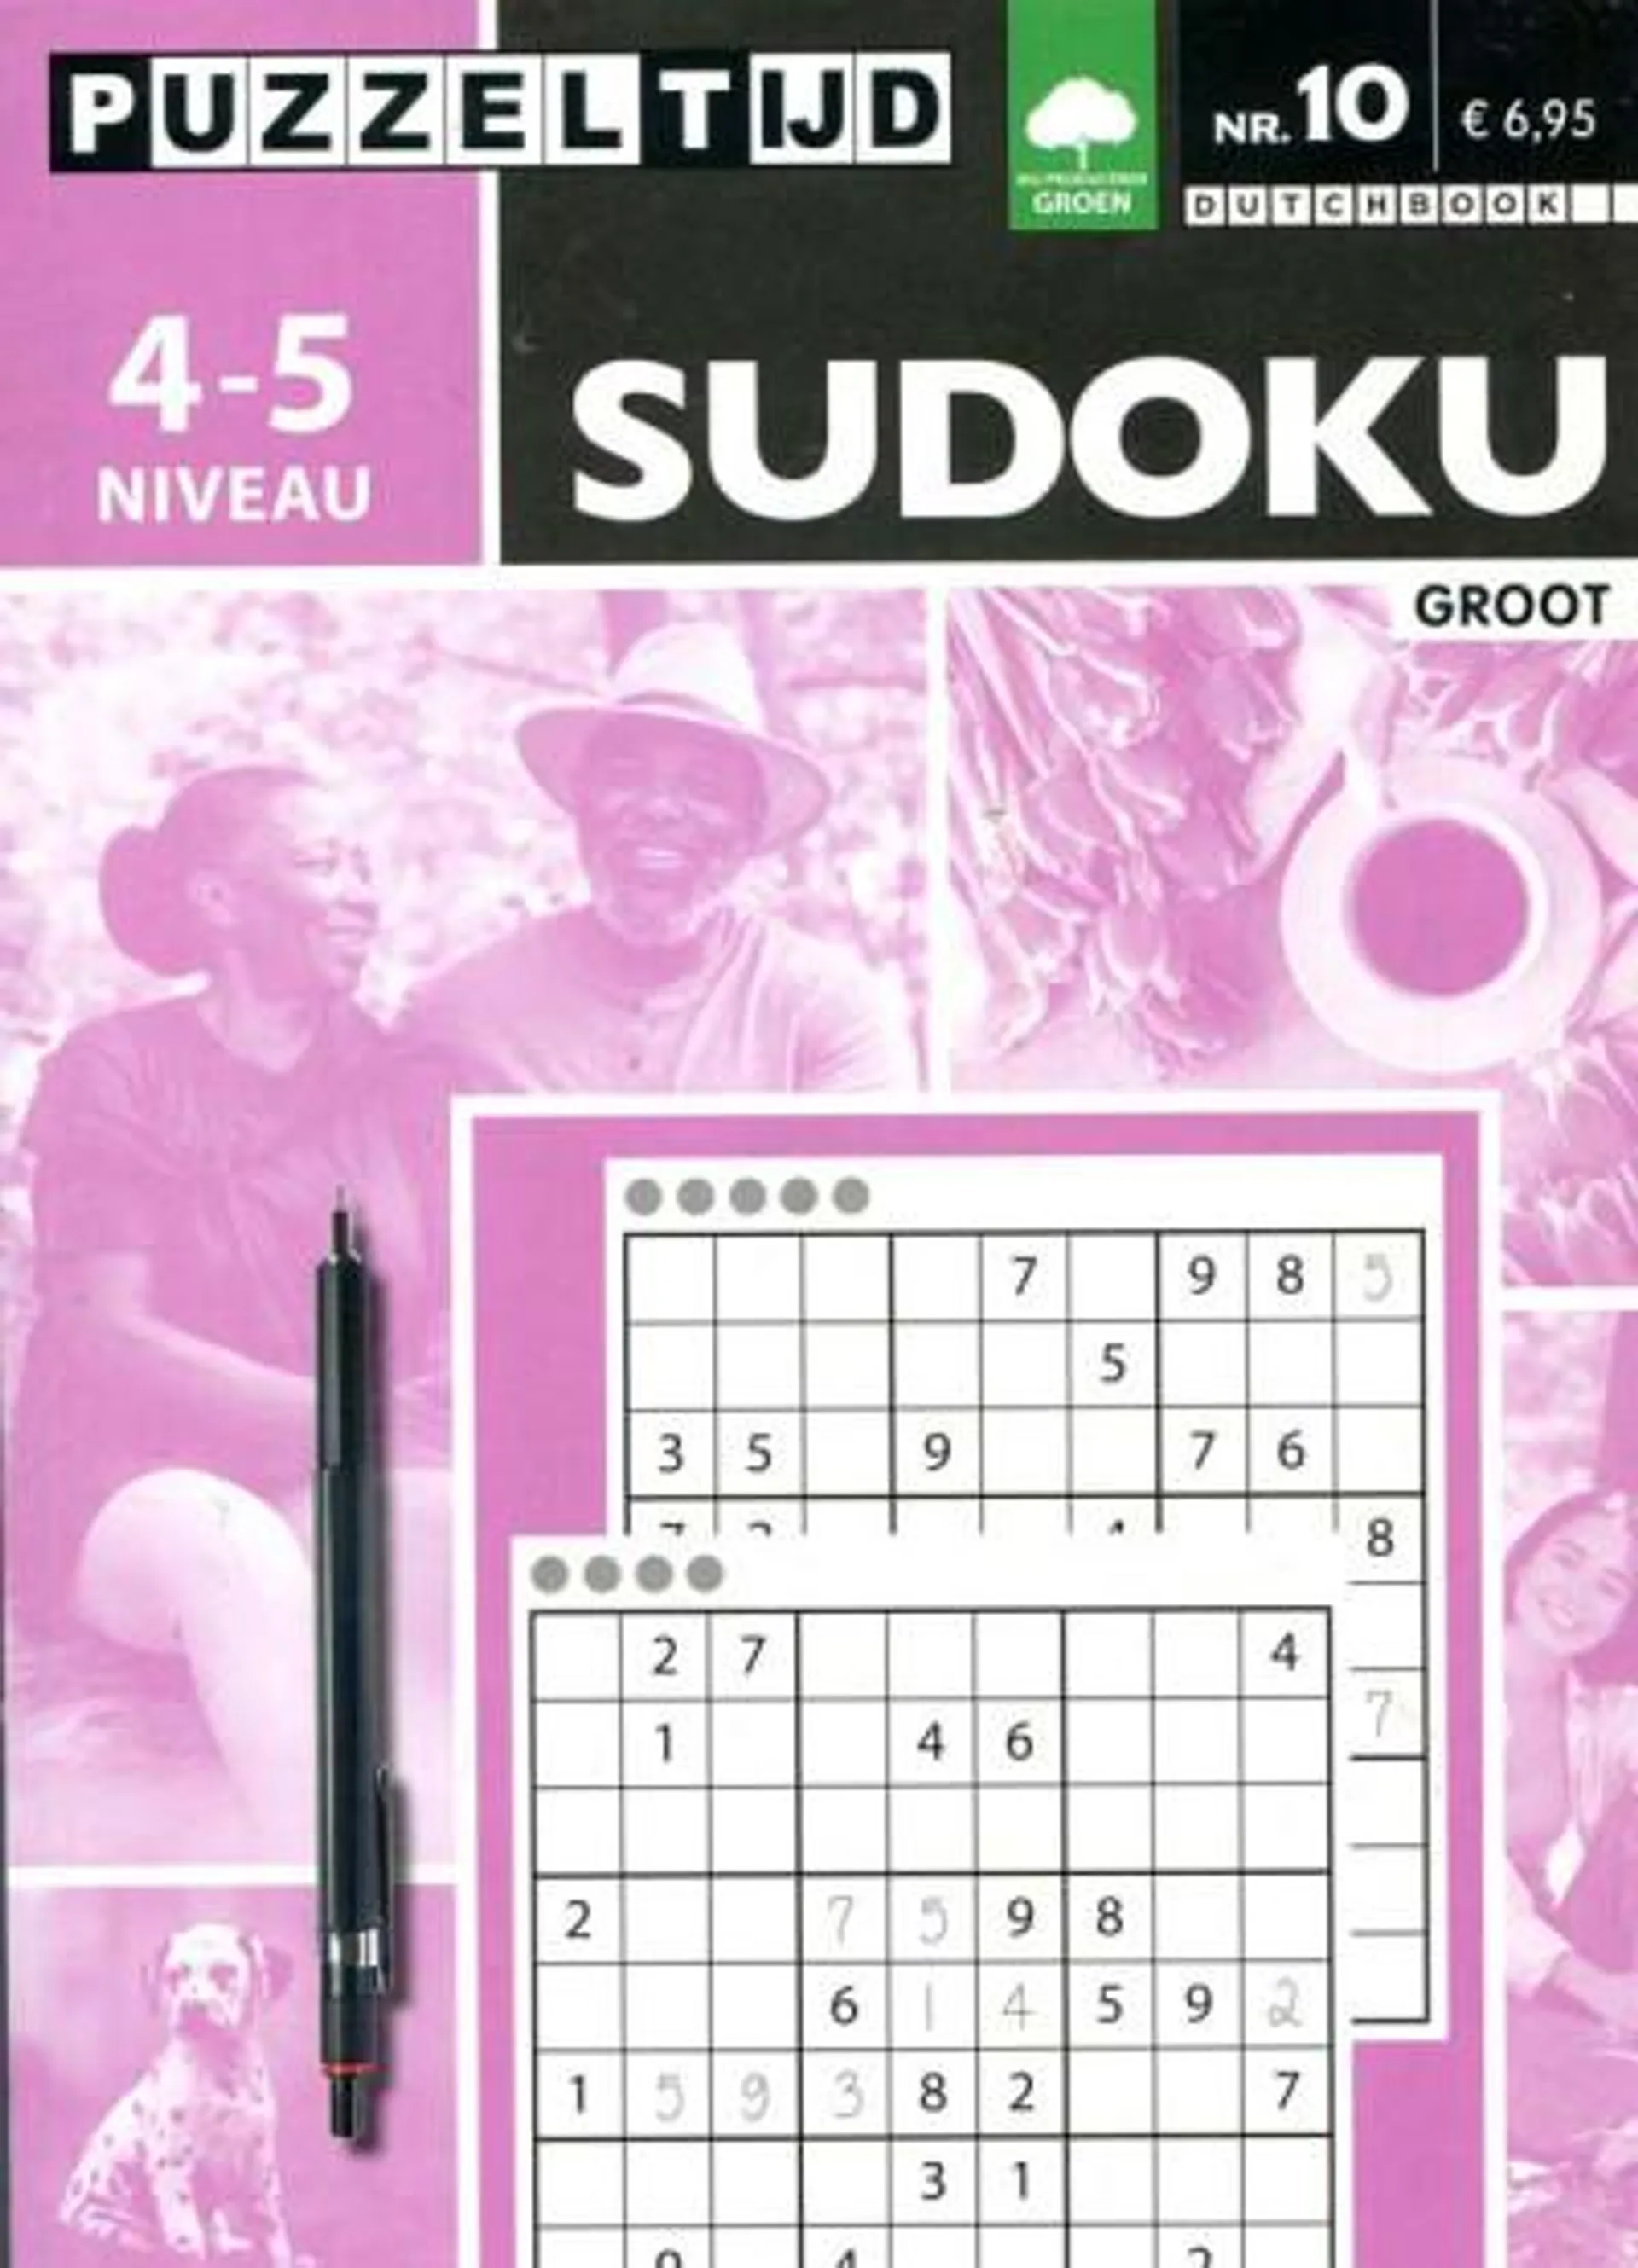 Puzzelboek groot sudoku 4-5 punt nr10